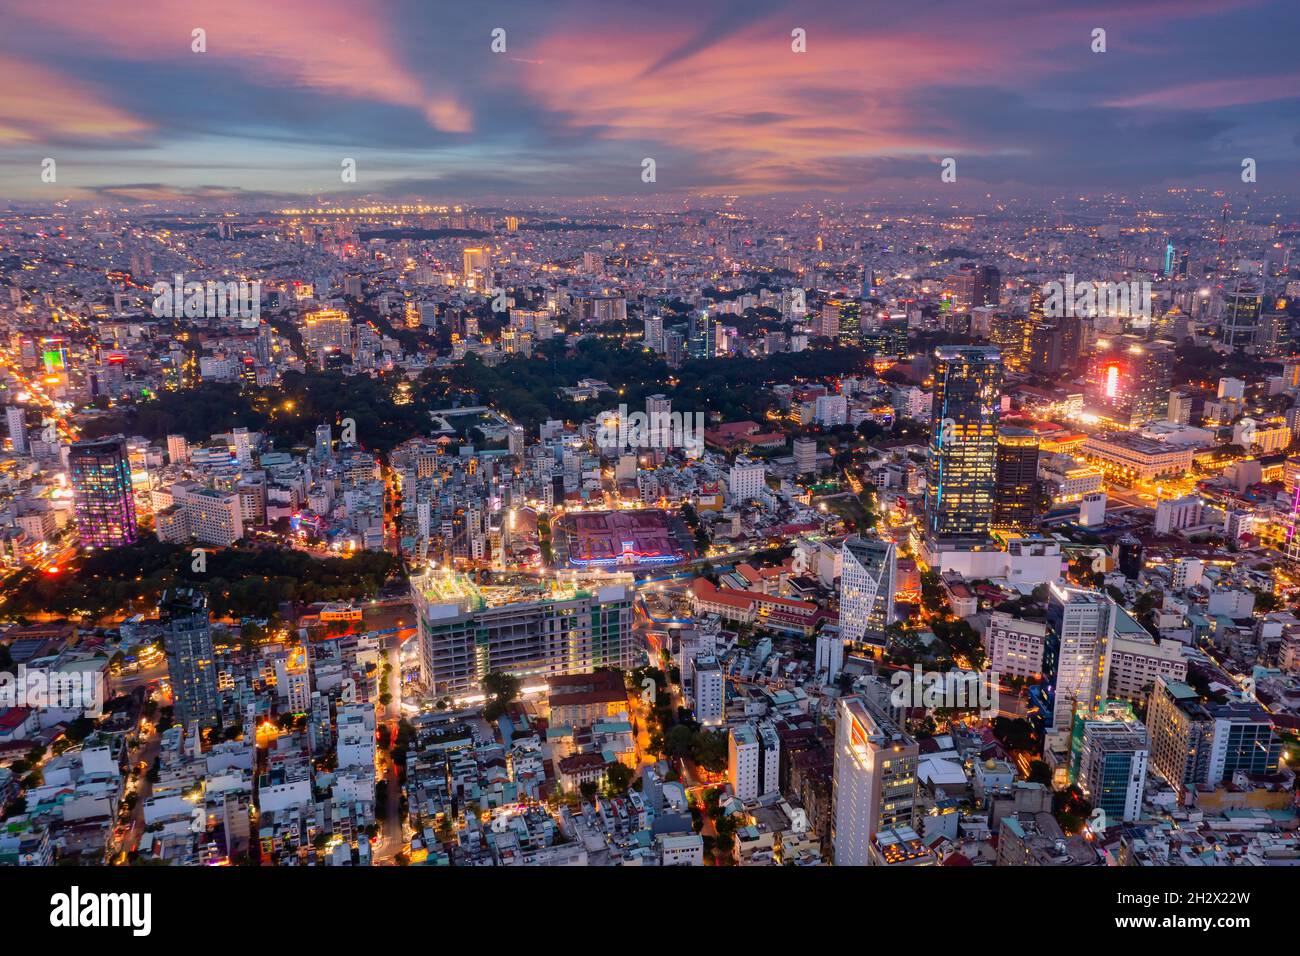 Vue sur drone photo du quartier du centre-ville de Saigon au coucher du soleil Banque D'Images